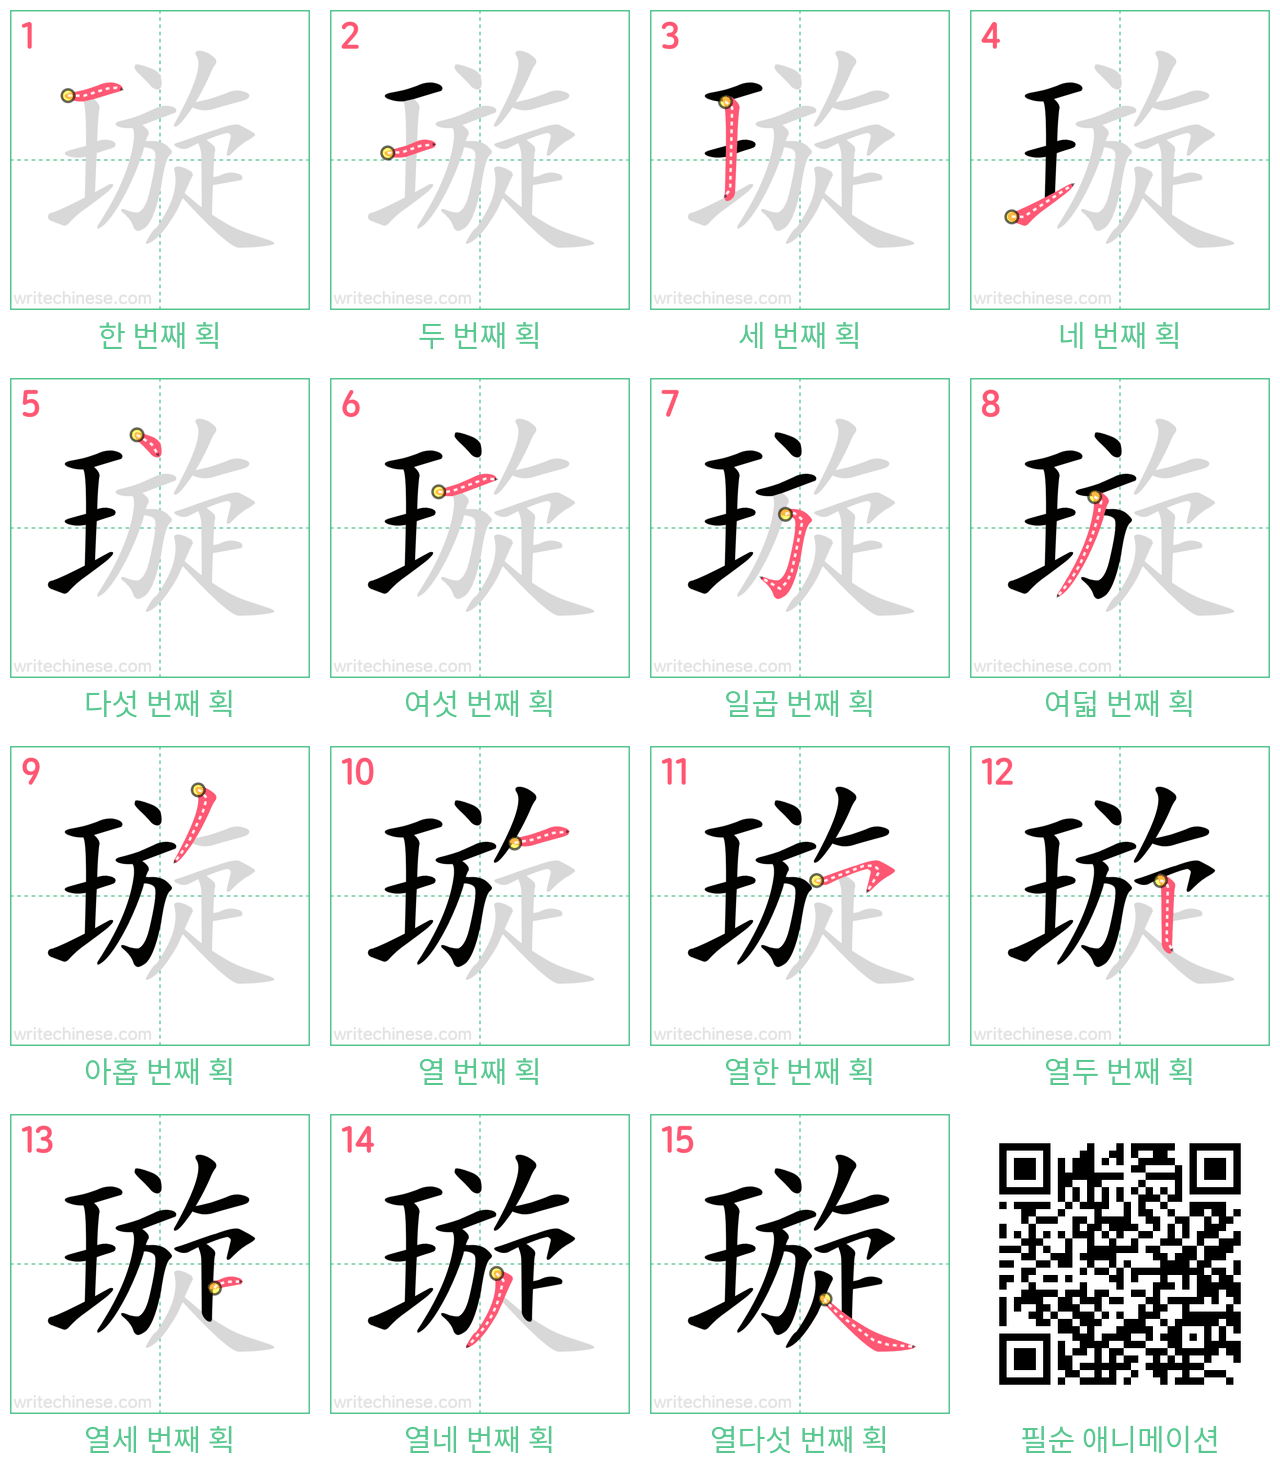 璇 step-by-step stroke order diagrams